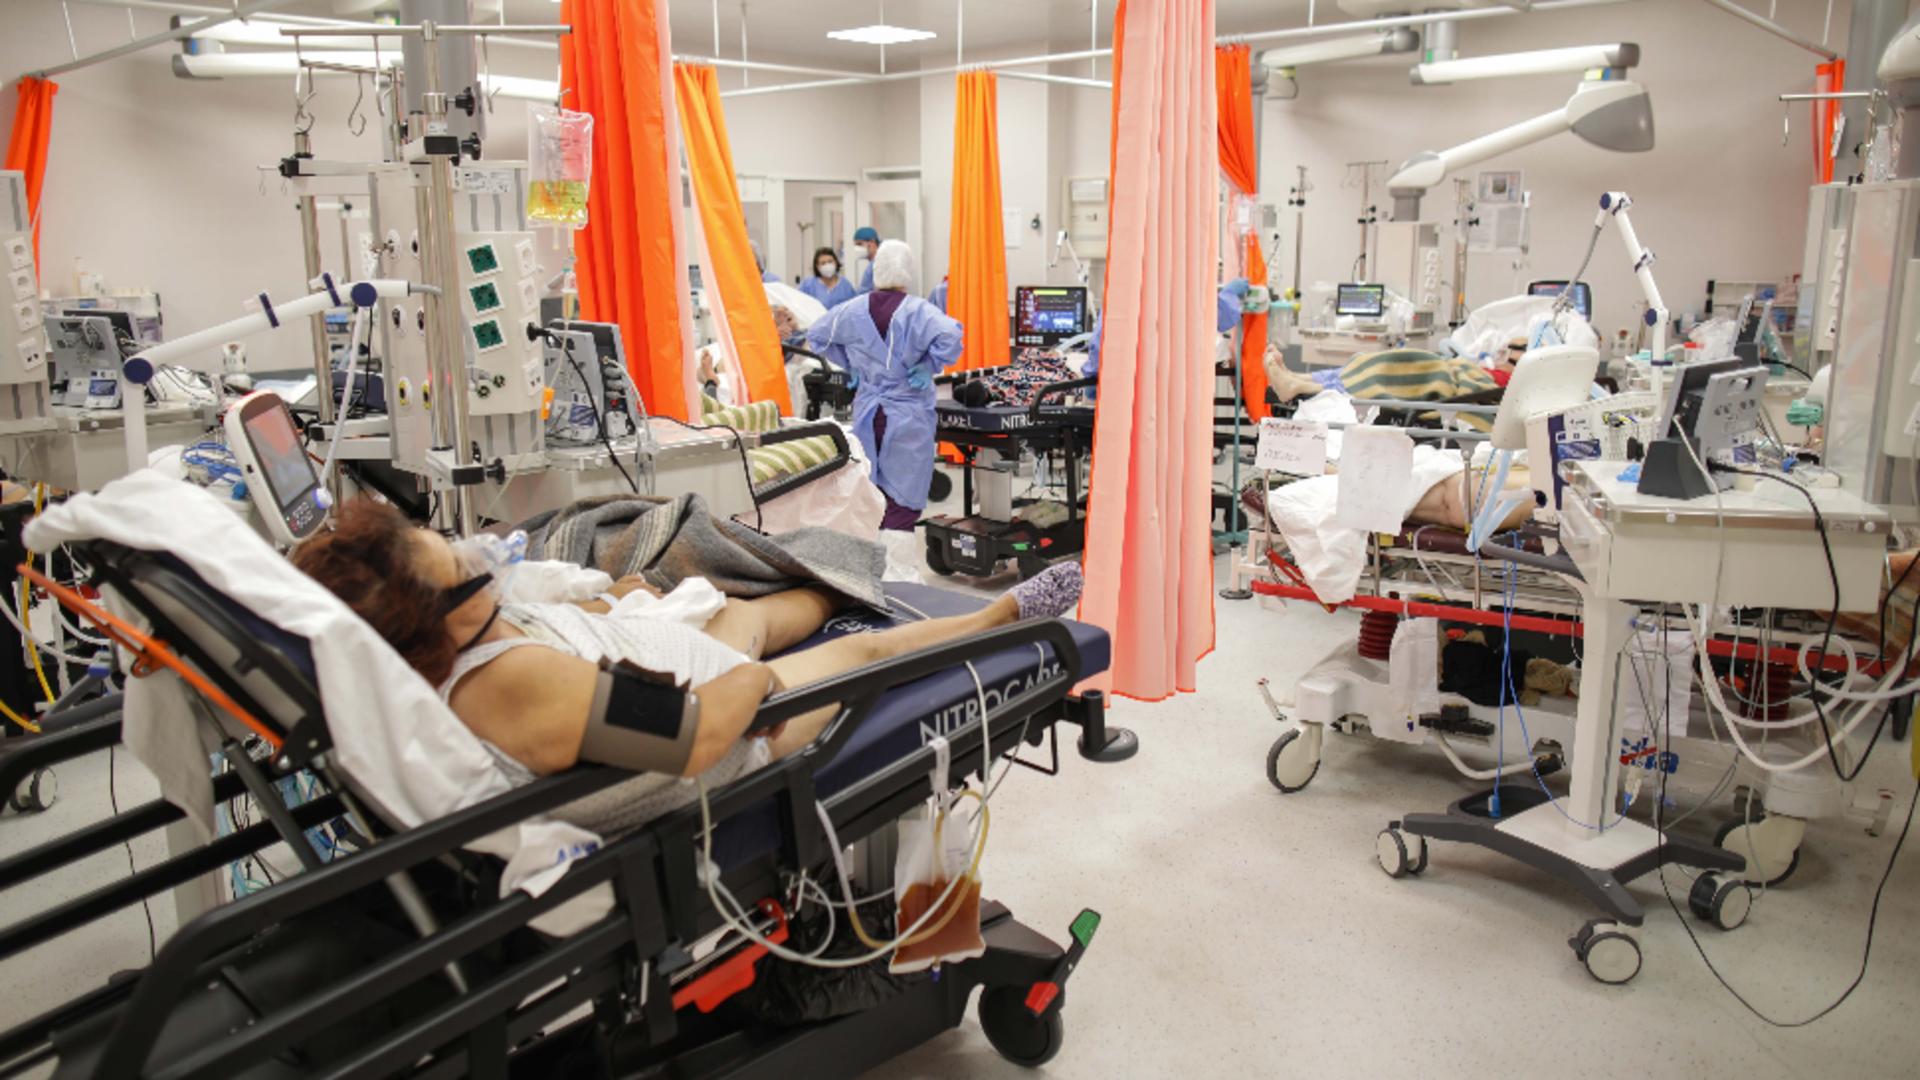 Spitalele - motiv de dispută între politicieni si guverne. Foto/Profimedia